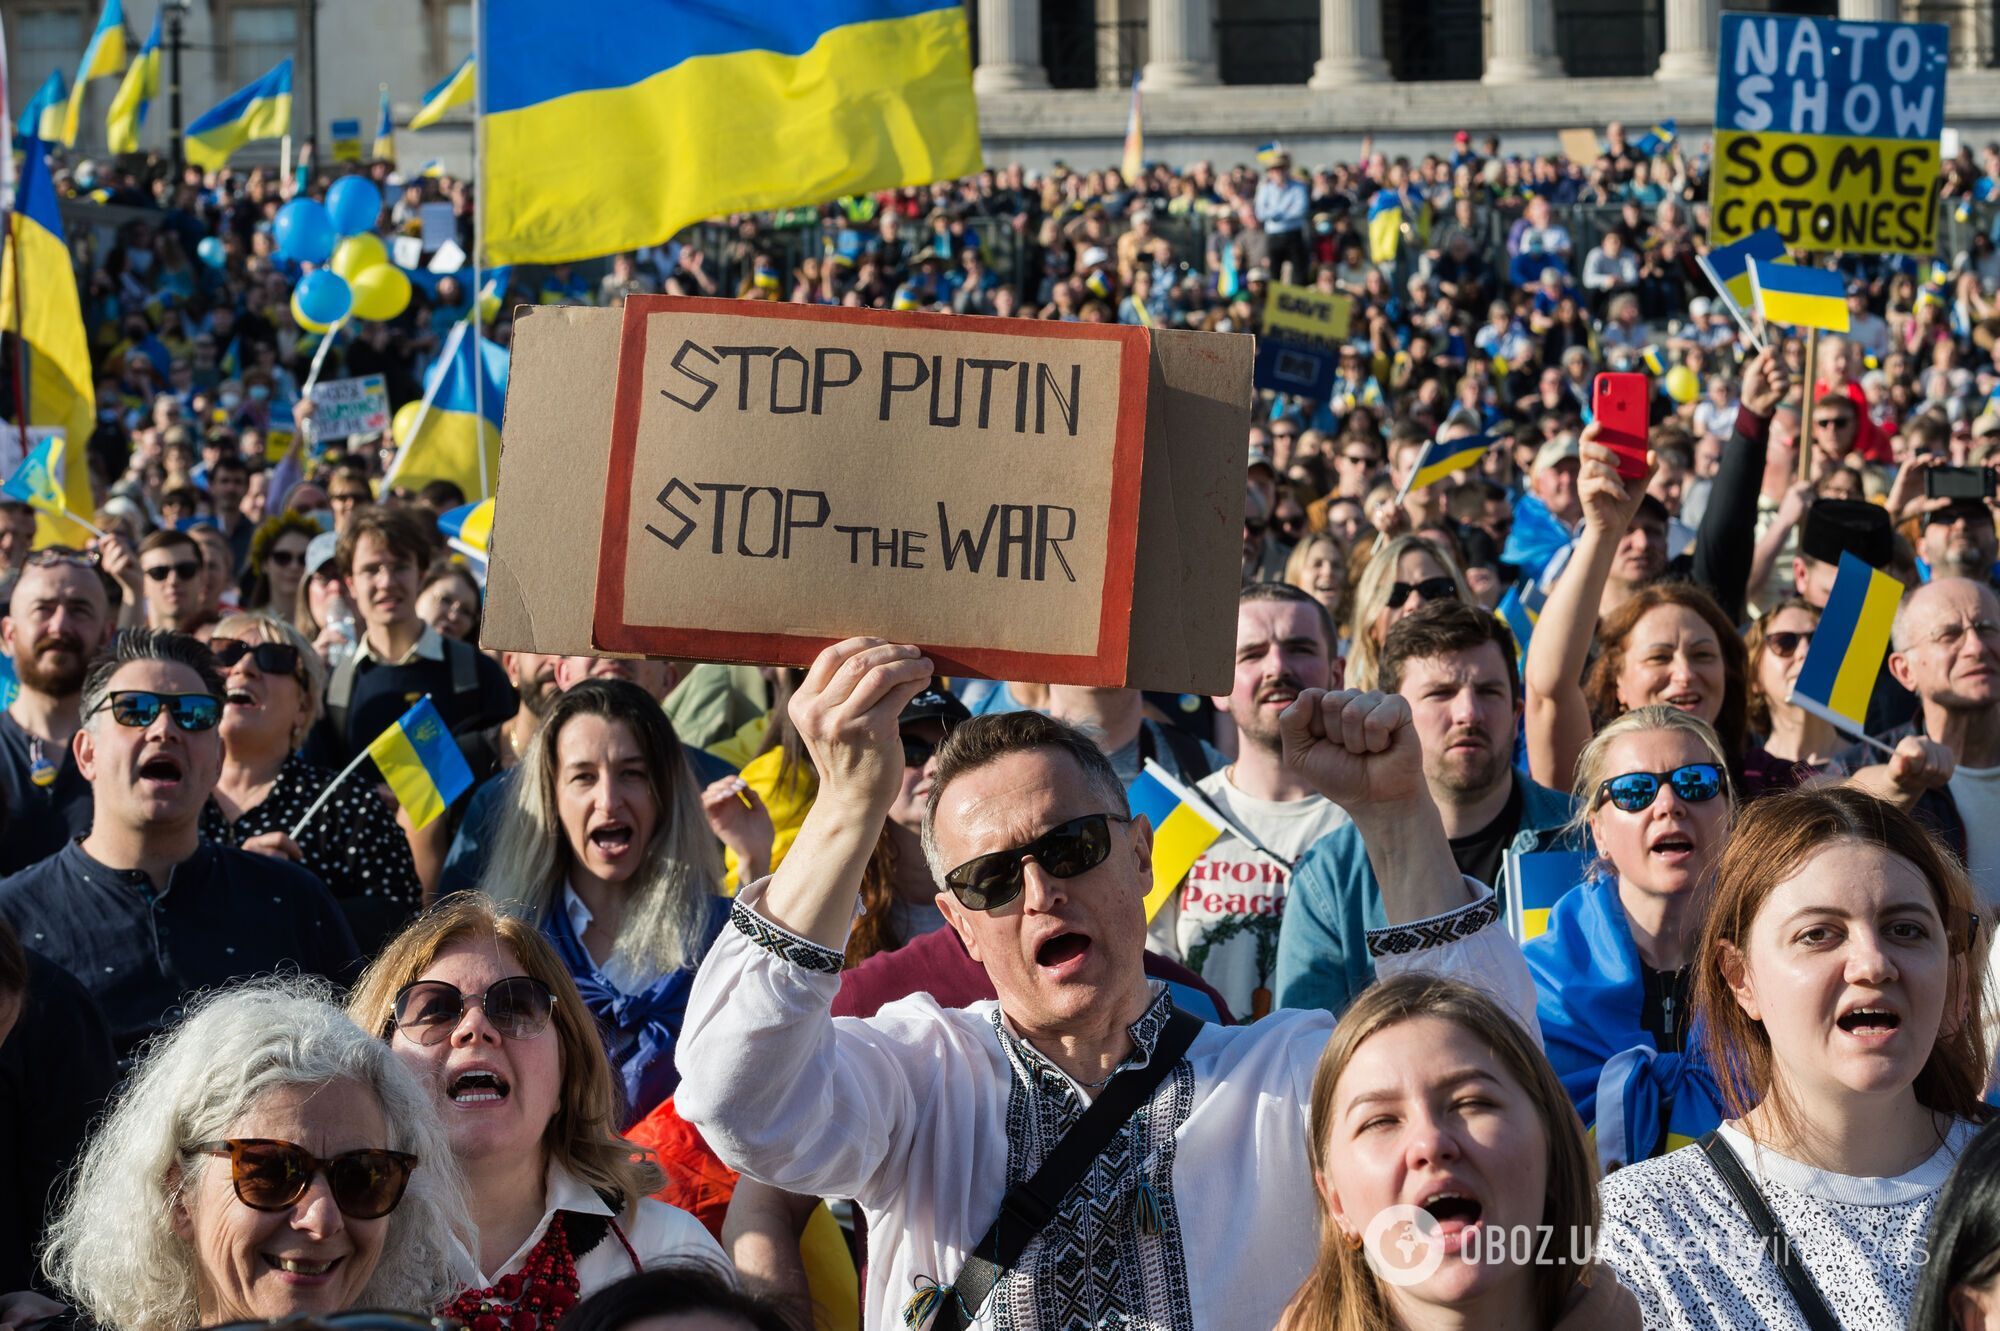 "We stand with Ukraine!": десятки тисяч осіб вийшли на мітинг на підтримку України в Лондоні. Фото і відео